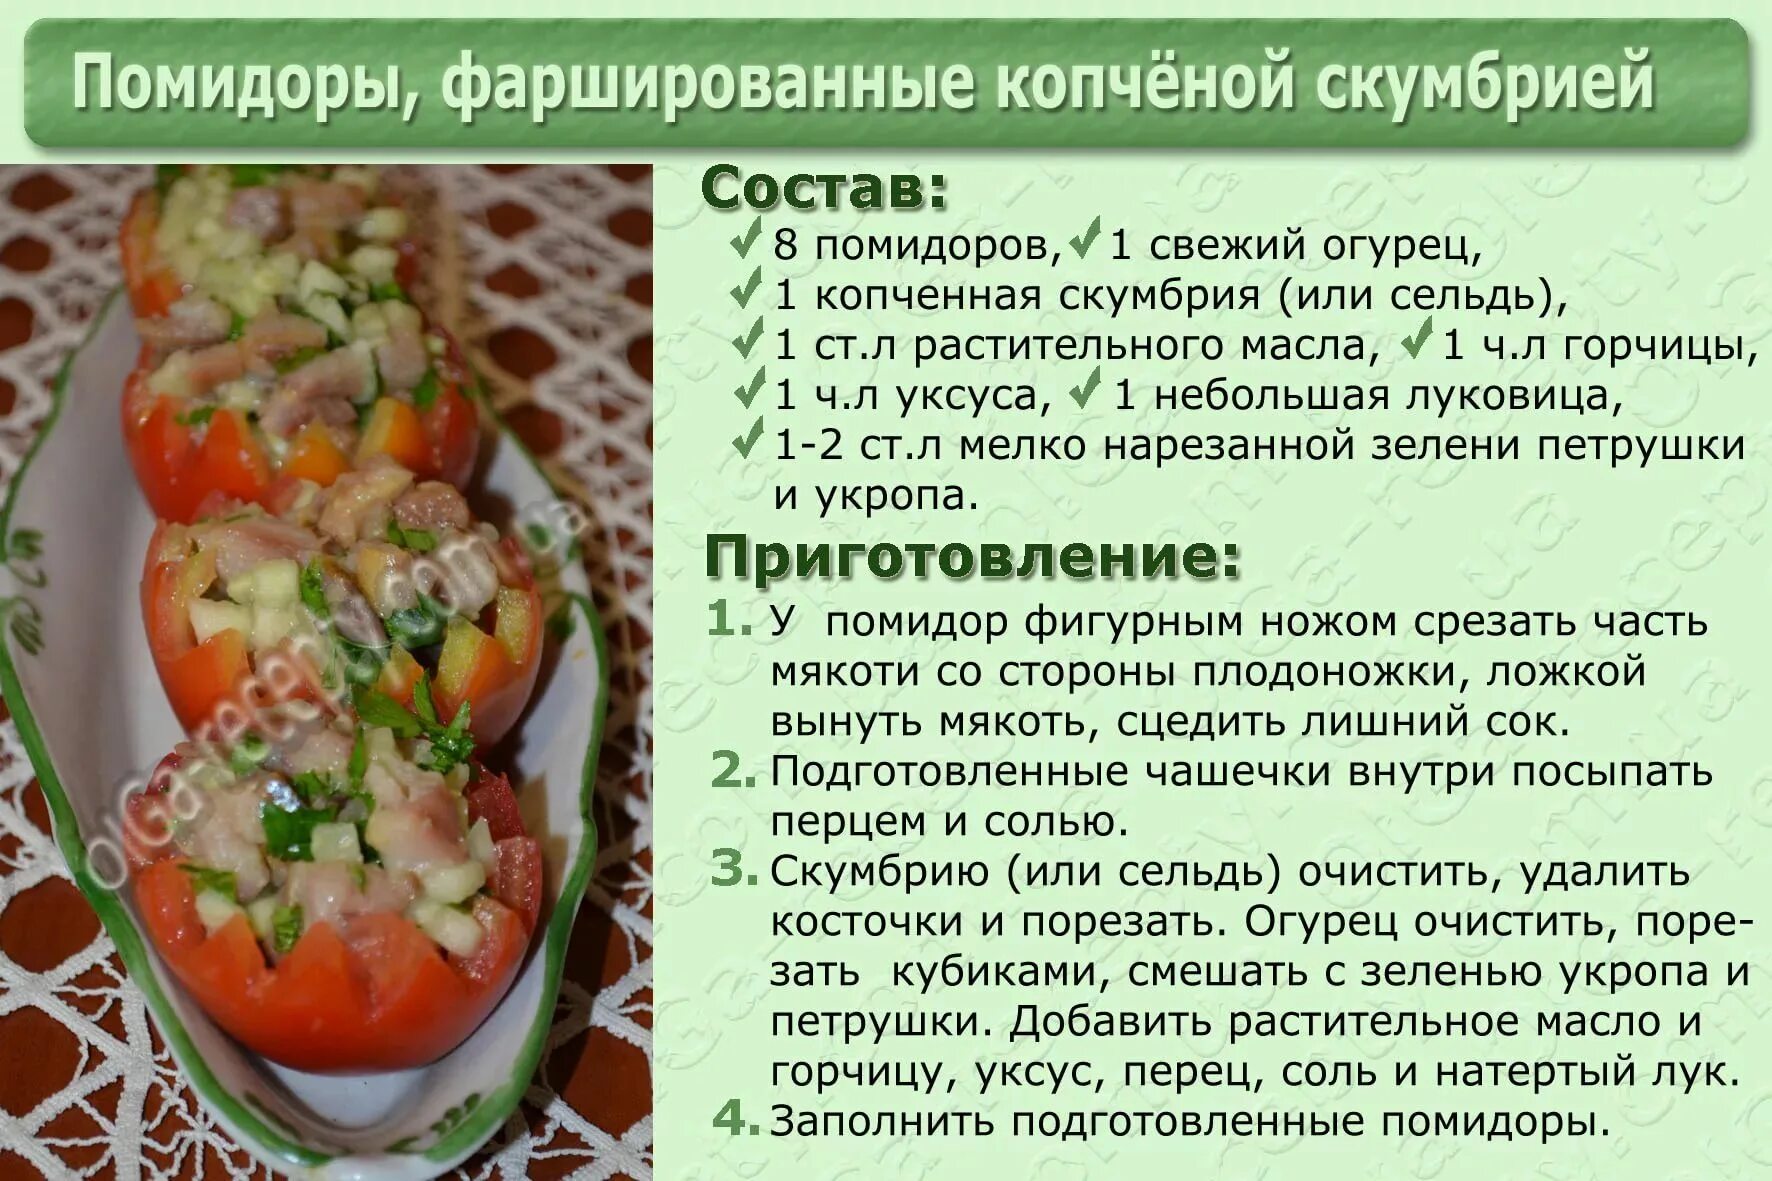 Сколько соли в свежих помидорах. Вкусные рецепты картинки. Картинки для рецептов кулинарии. Рецепты блюд в картинках с описанием. Кулинарные рецепты в картинках.